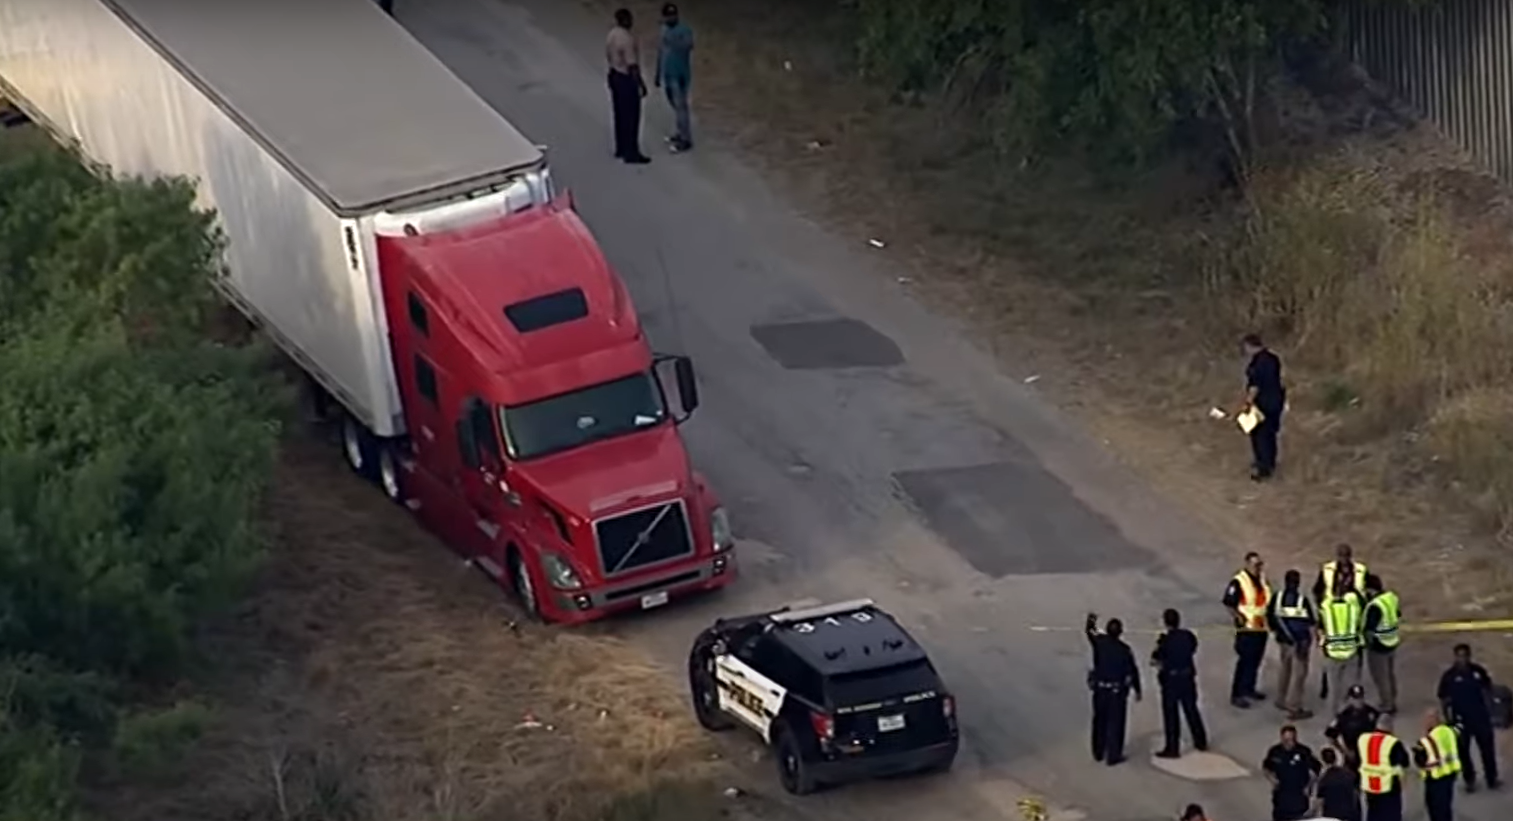  Pronađena tijela 46 ljudi u prikolici u Teksasu 